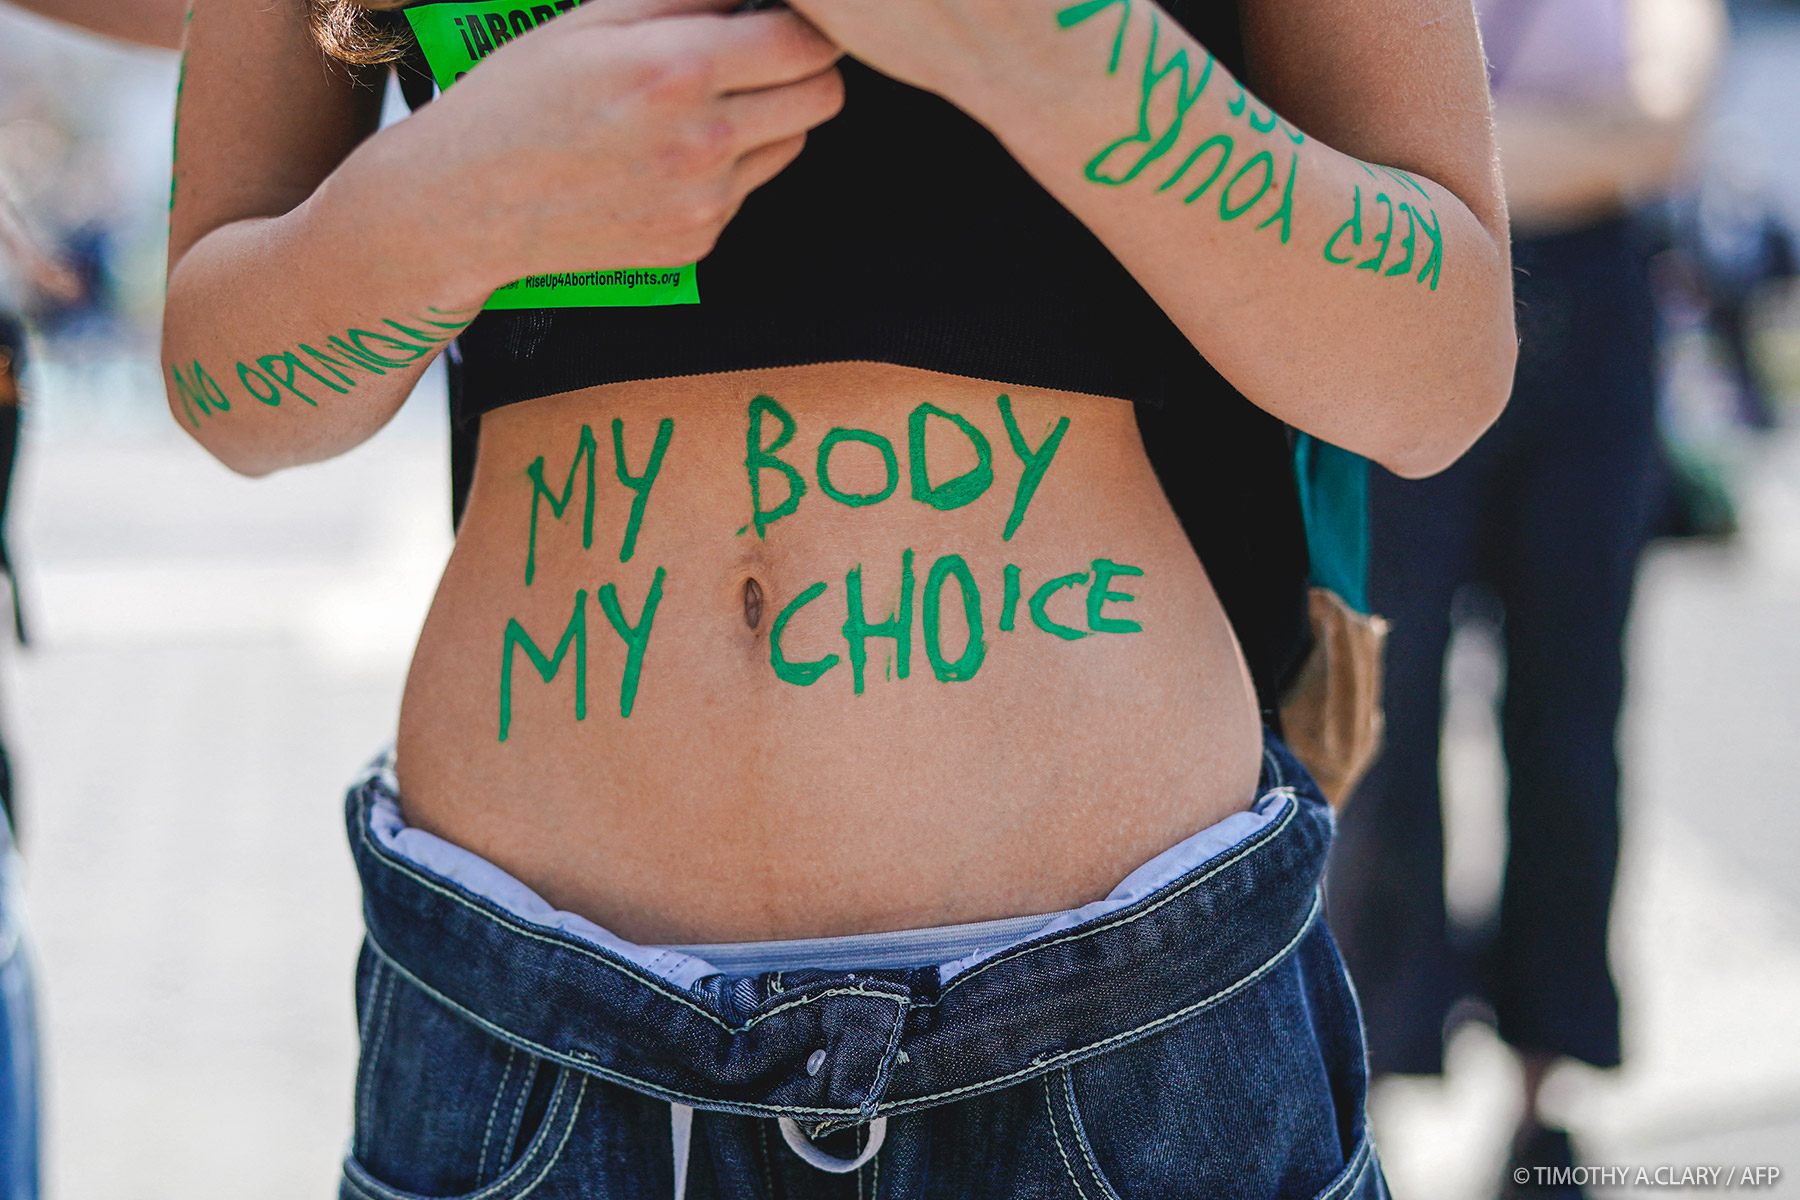 Debe salvaguardarse el derecho al aborto seguro y legal, exigen los eurodiputados |  Noticias |  Parlamento Europeo